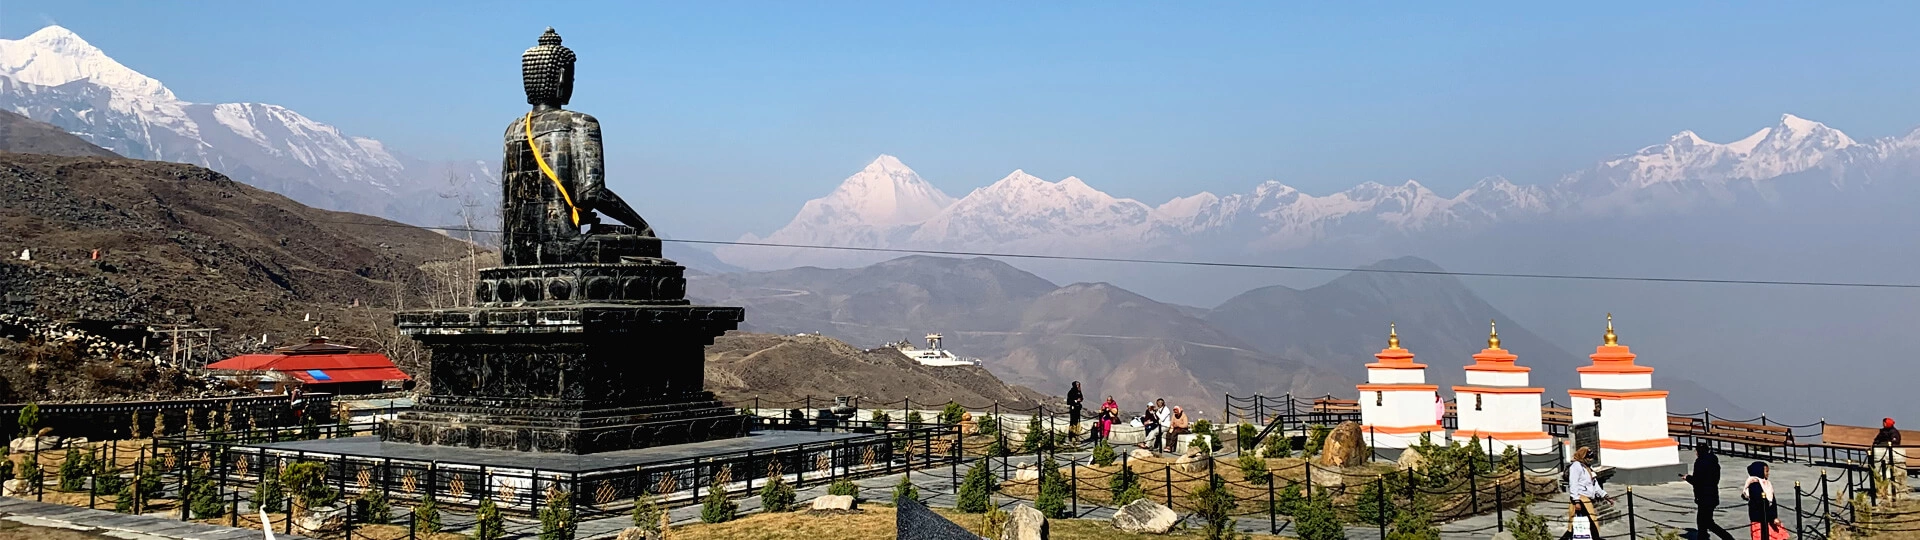 Hindu Pilgrimage Sites in Nepal